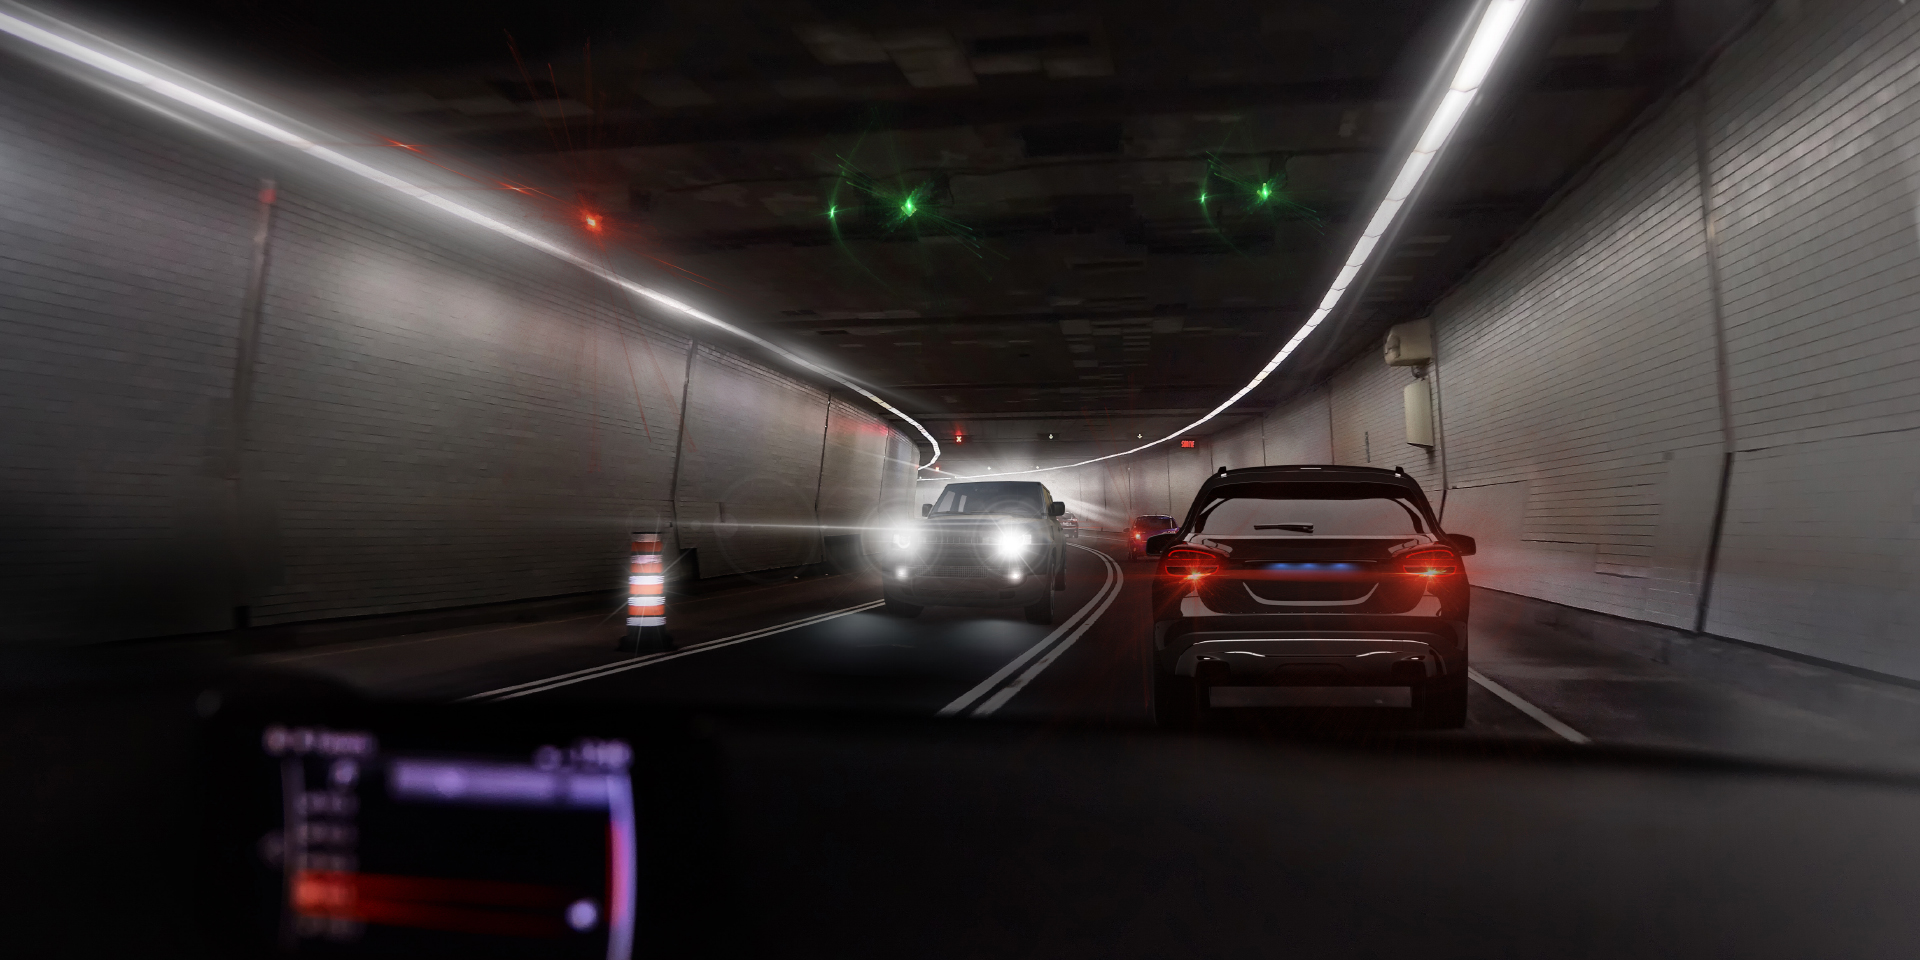 Deux images du point de vue d’un conducteur dans un tunnel avec des voitures venant en sens inverse, montrant l’éblouissement causé par les voitures et les lumières du tunnel sur une image, et une réduction considérable de l’éblouissement sur l’autre image.